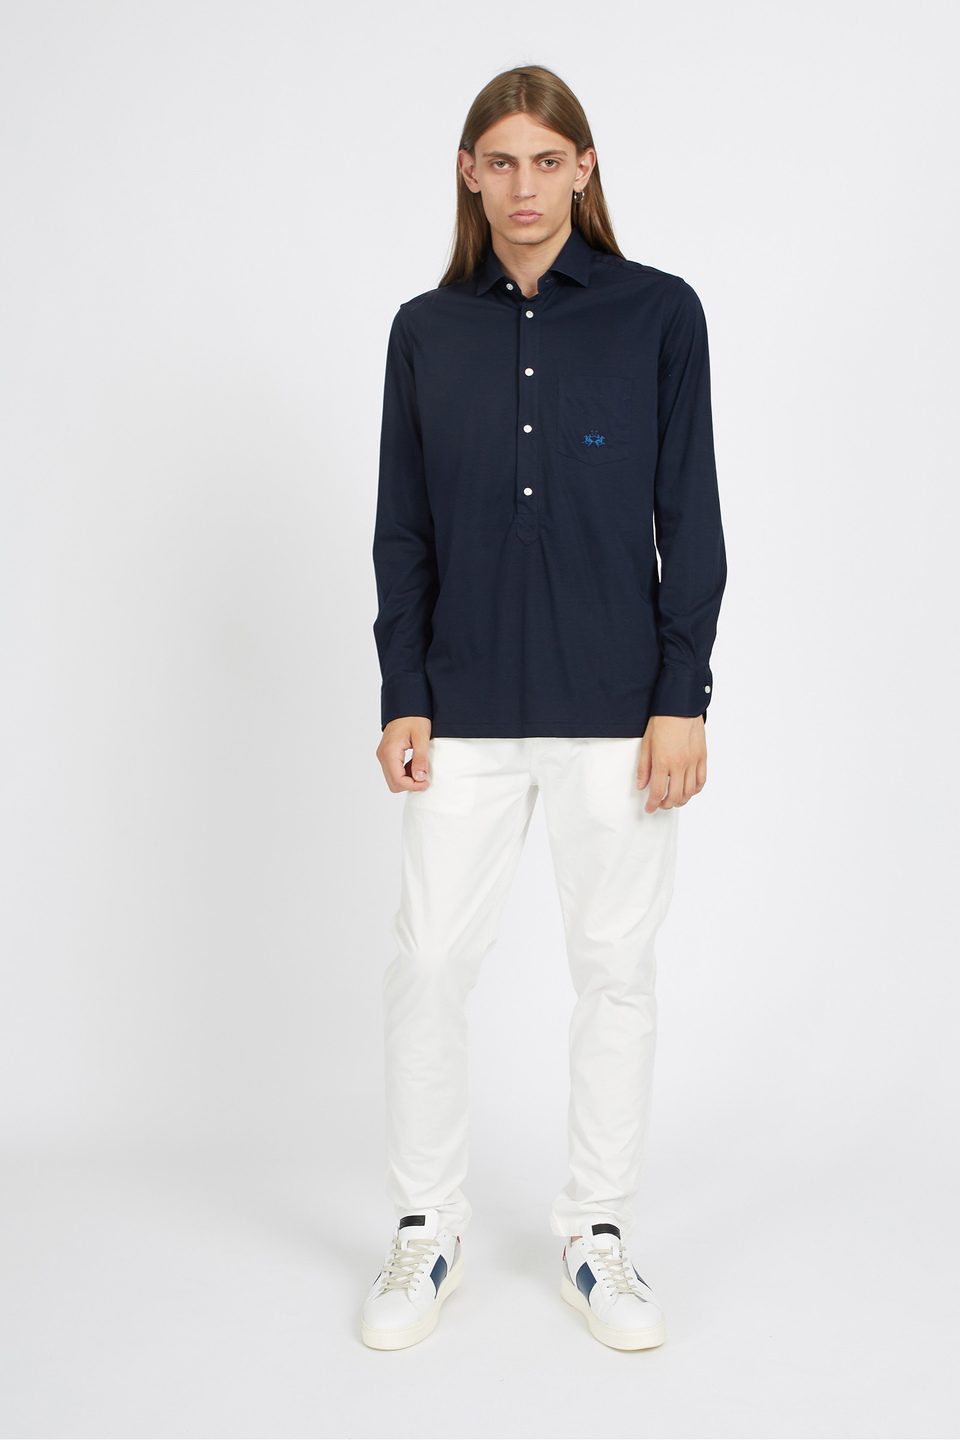 Camisa de hombre custom fit de manga larga en jersey de algodón - Varden | La Martina - Official Online Shop